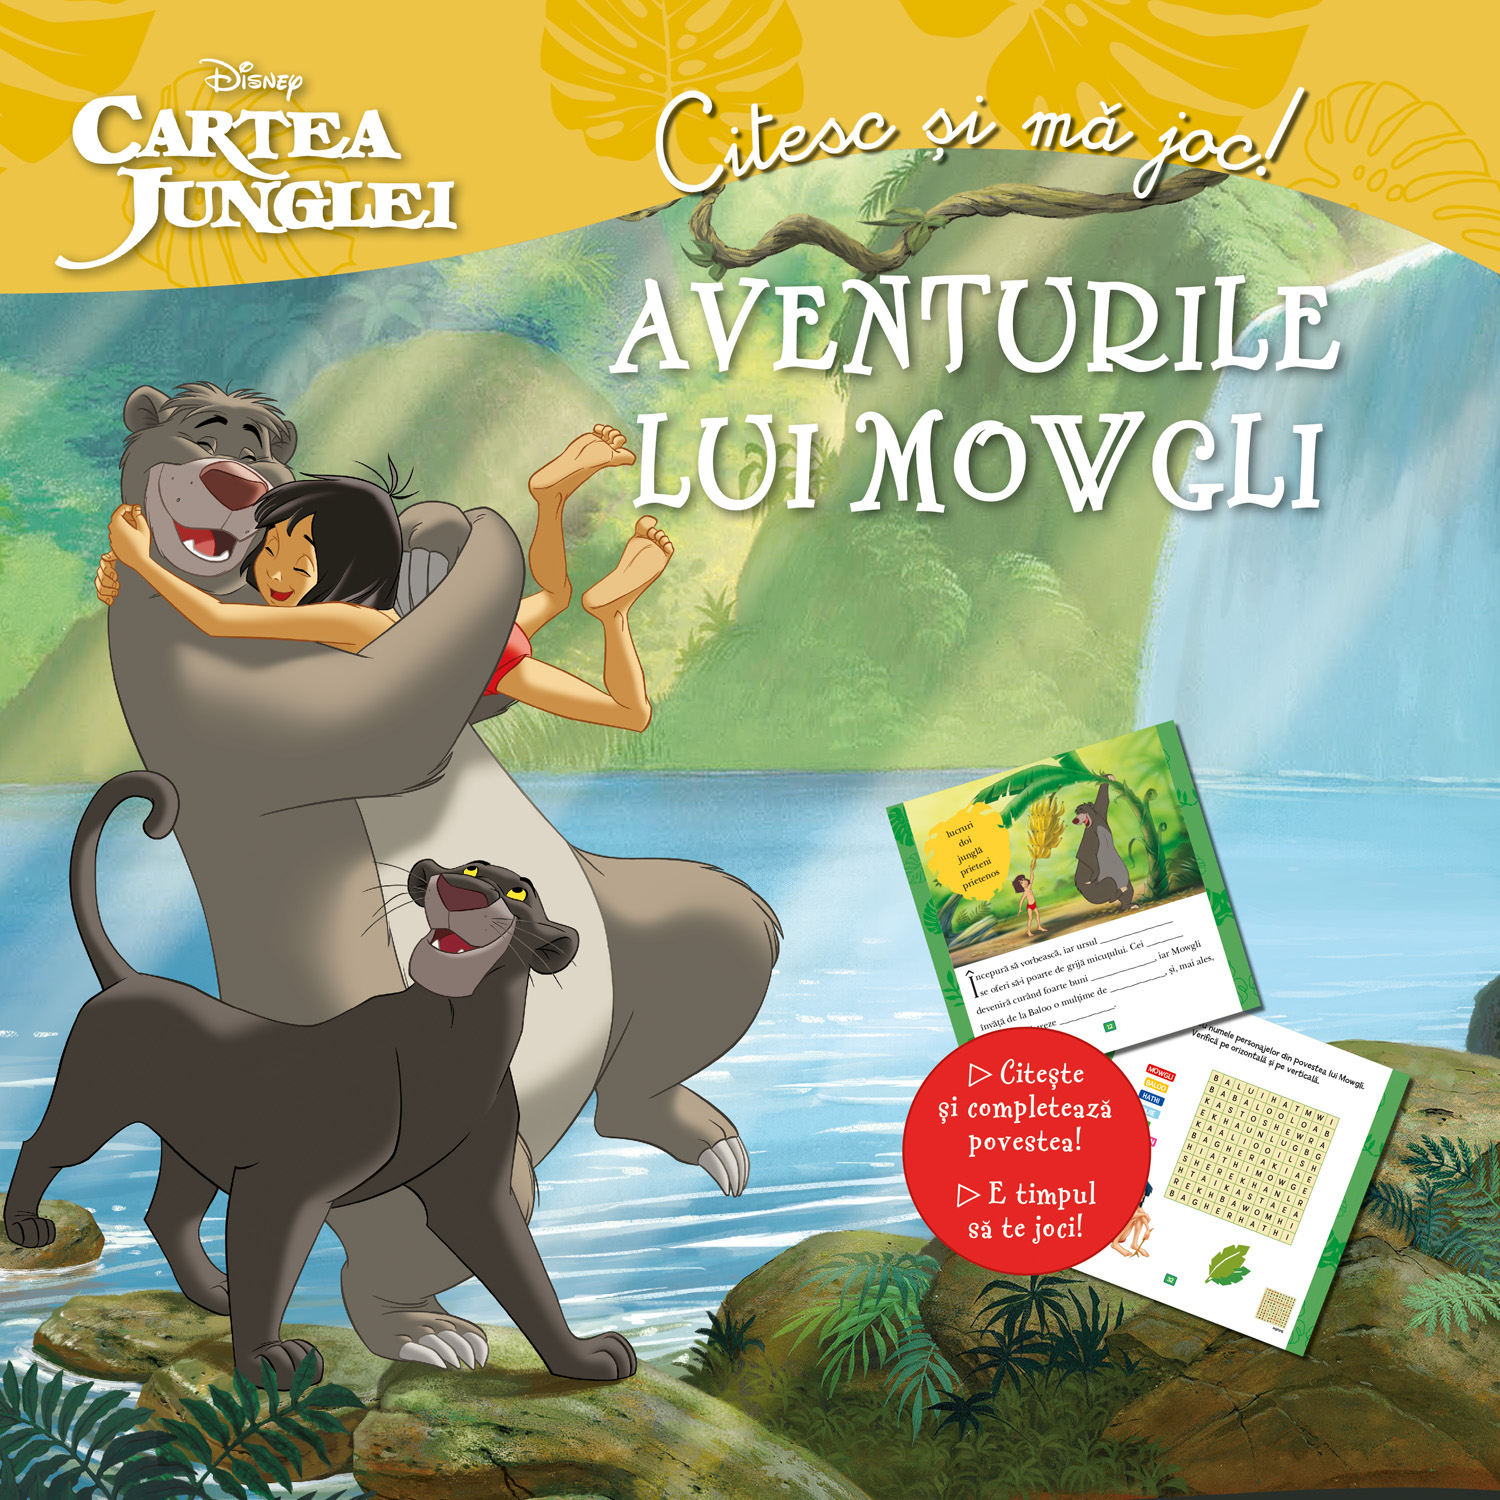 Cartea Junglei. Aventurile Lui Mowgli. Citesc Si Ma Joc